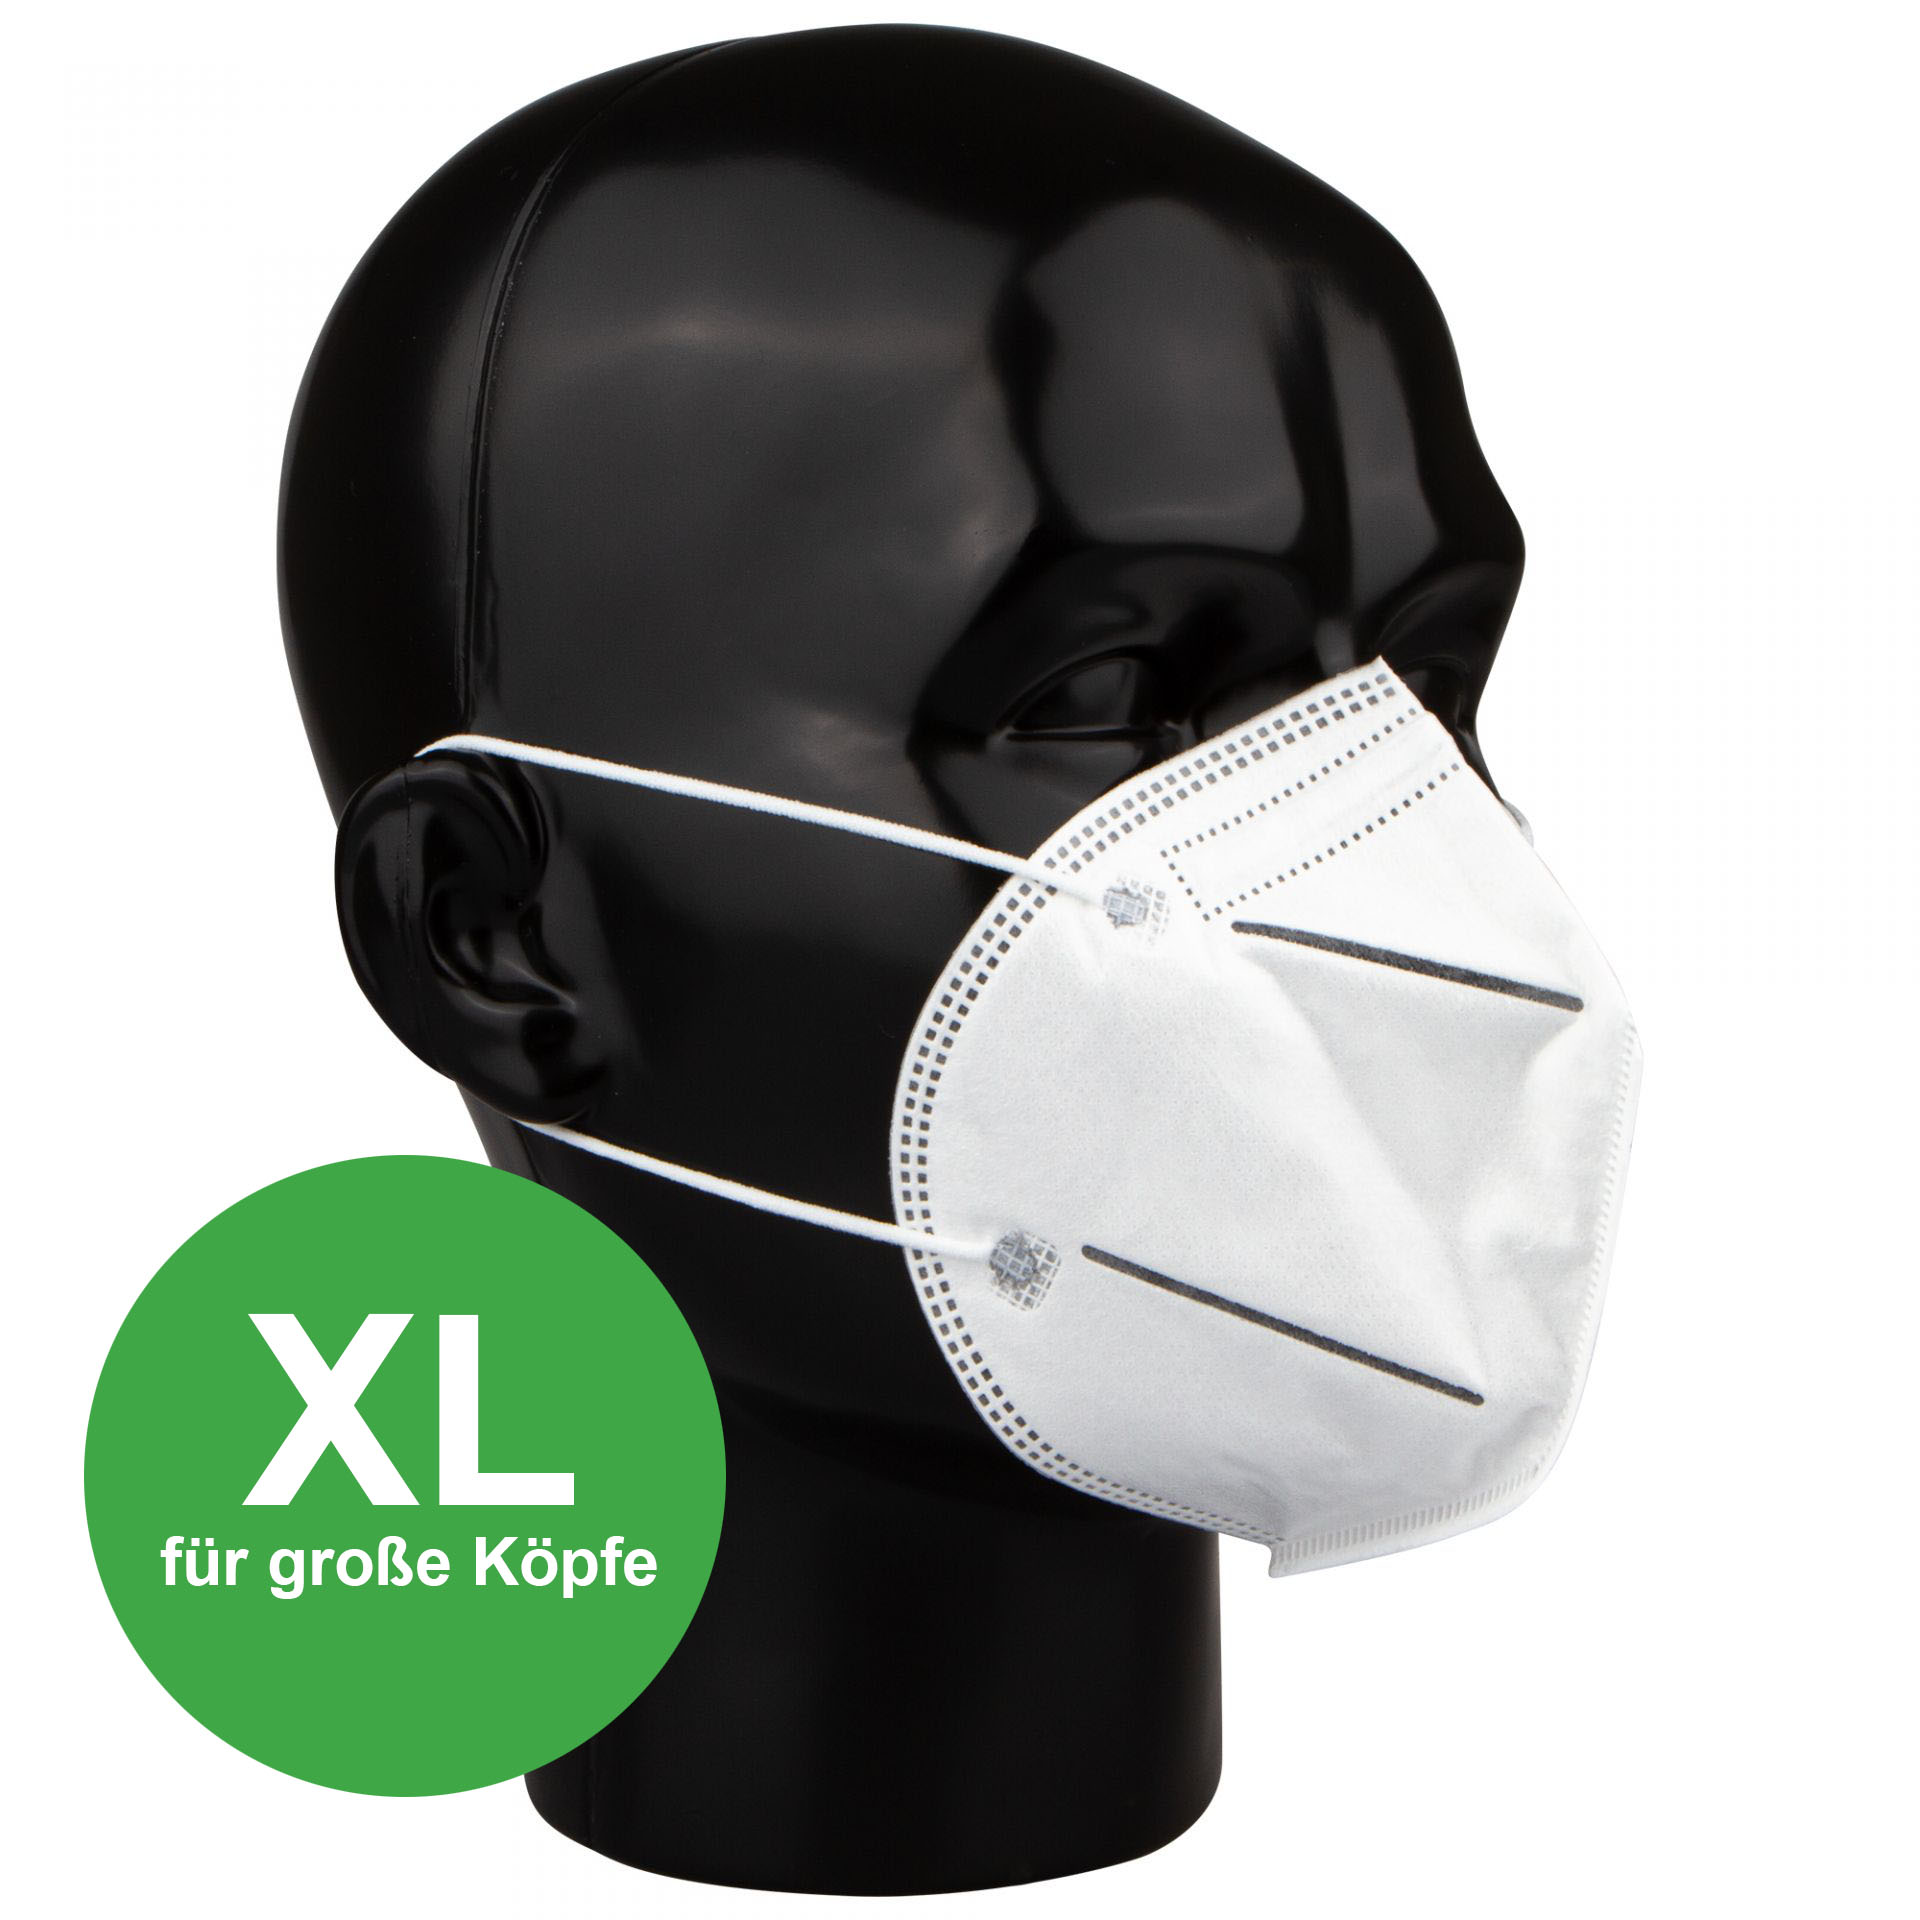 FFP2 Maske mit XL Haltebügel für große Köpfe 10 Stück